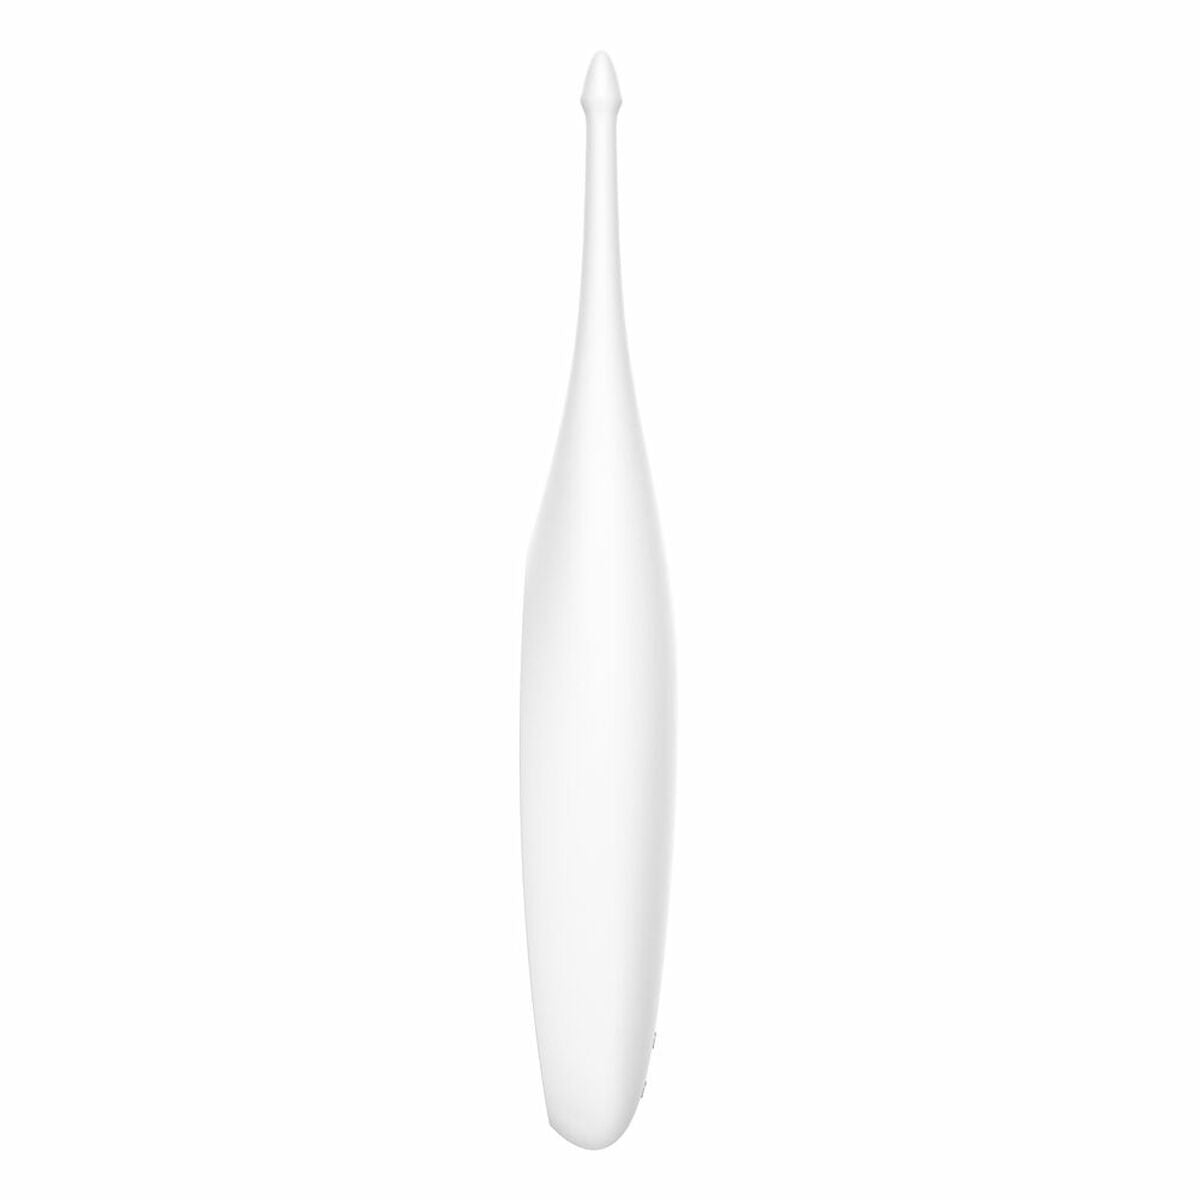 Kaufe Gekrümmter Klitorisvibrator Satisfyer Weiß (17 x 3 cm) bei AWK Flagship um € 47.00